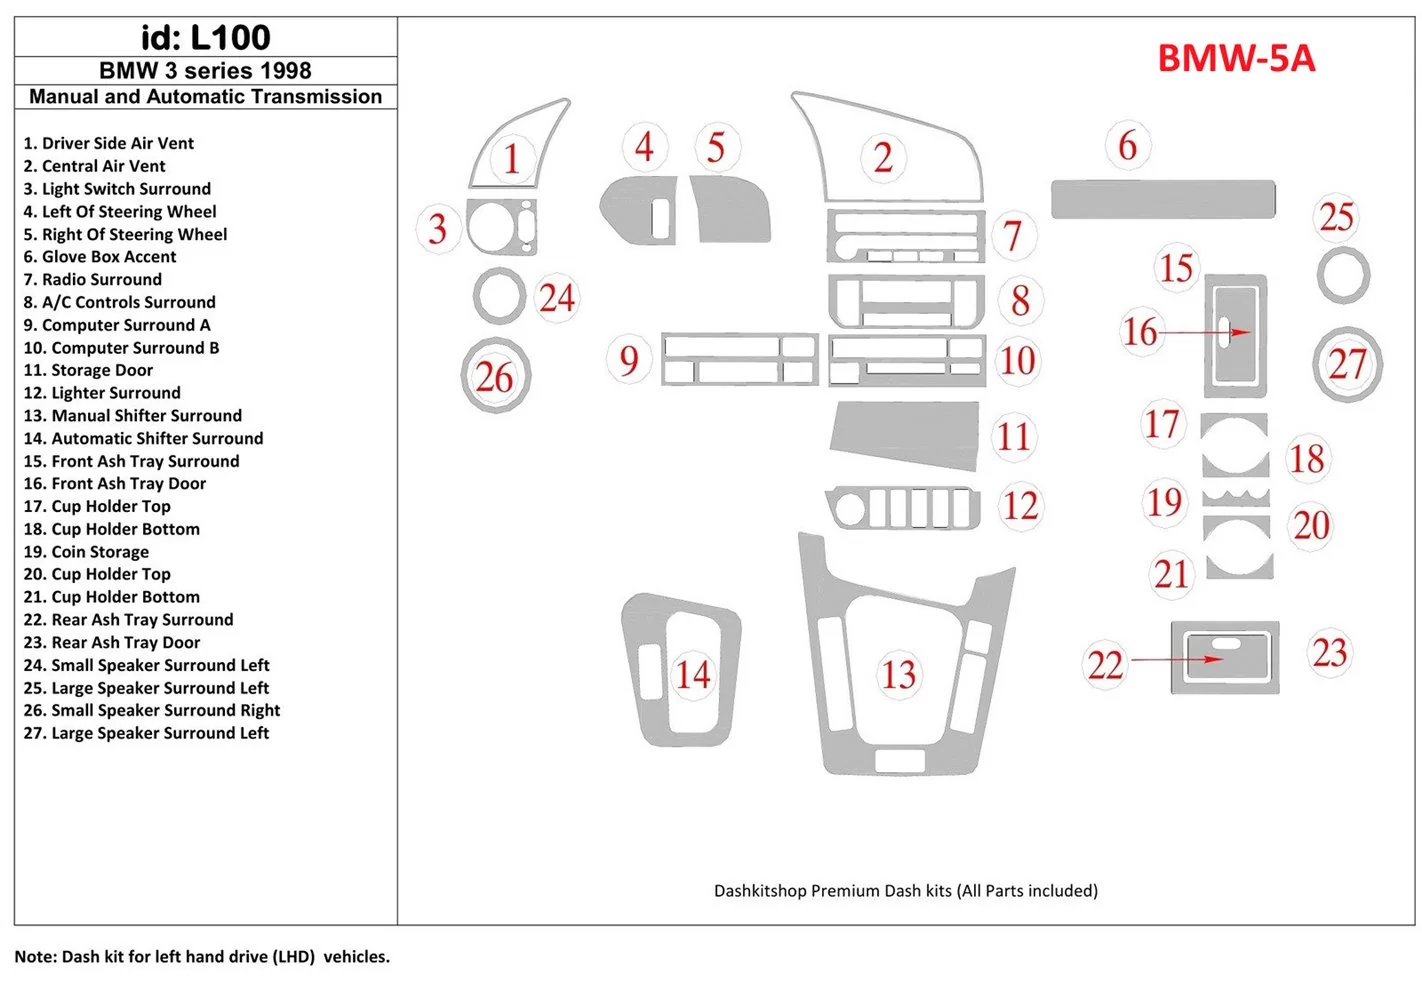 BMW 3 1998-1998 boîte manuellebox & Boîte automatique, 27 Parts set BD Kit la décoration du tableau de bord - 1 - habillage deco